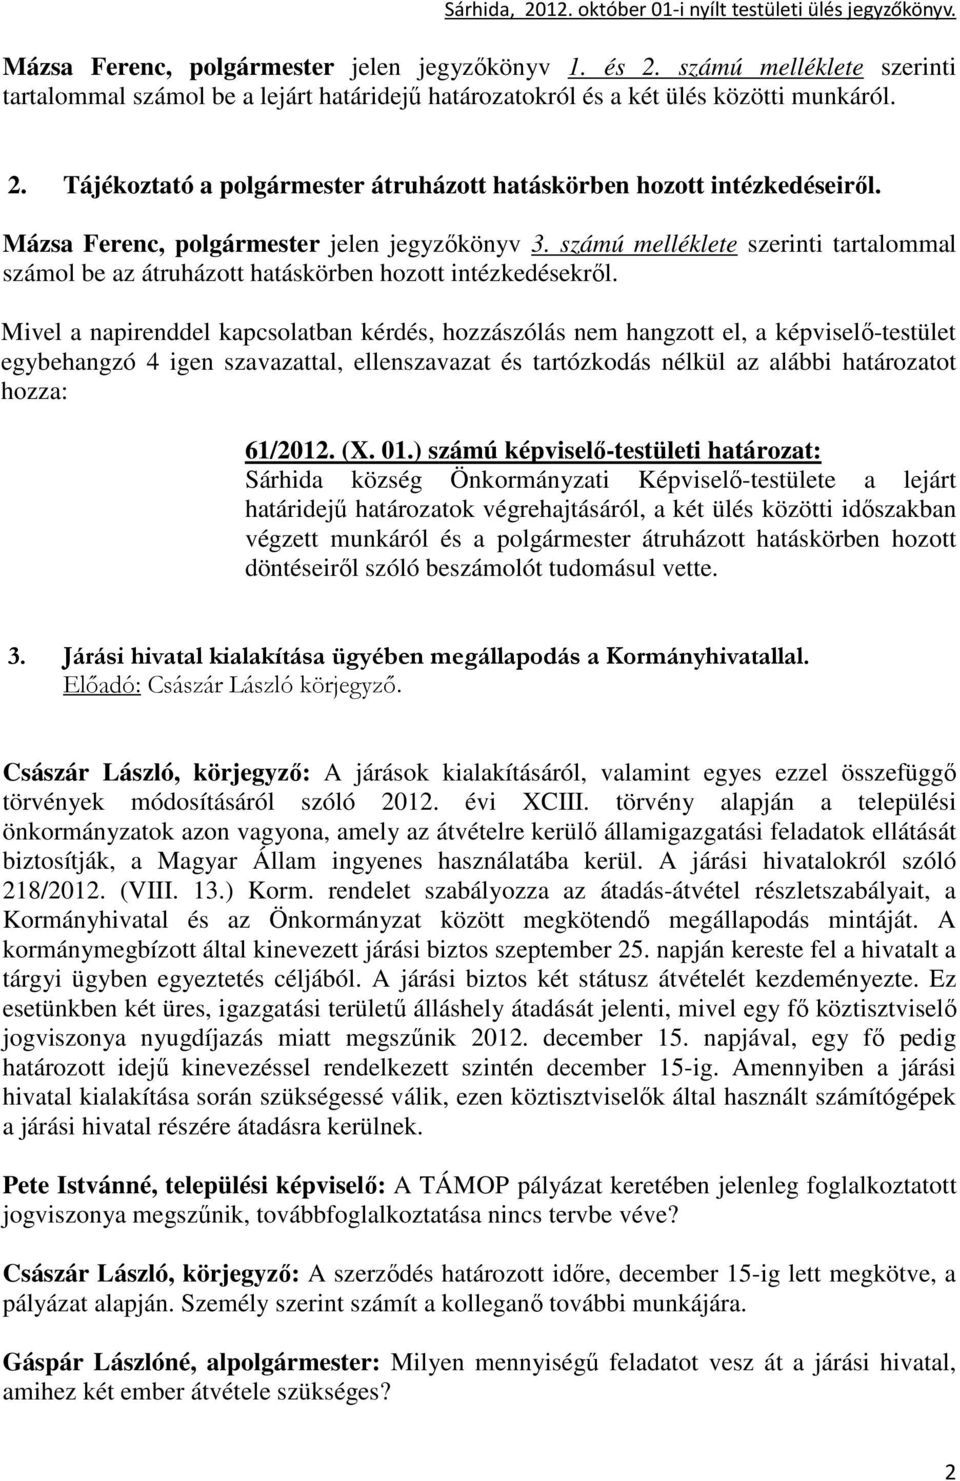 ) számú képviselı-testületi határozat: Sárhida község Önkormányzati Képviselı-testülete a lejárt határidejő határozatok végrehajtásáról, a két ülés közötti idıszakban végzett munkáról és a